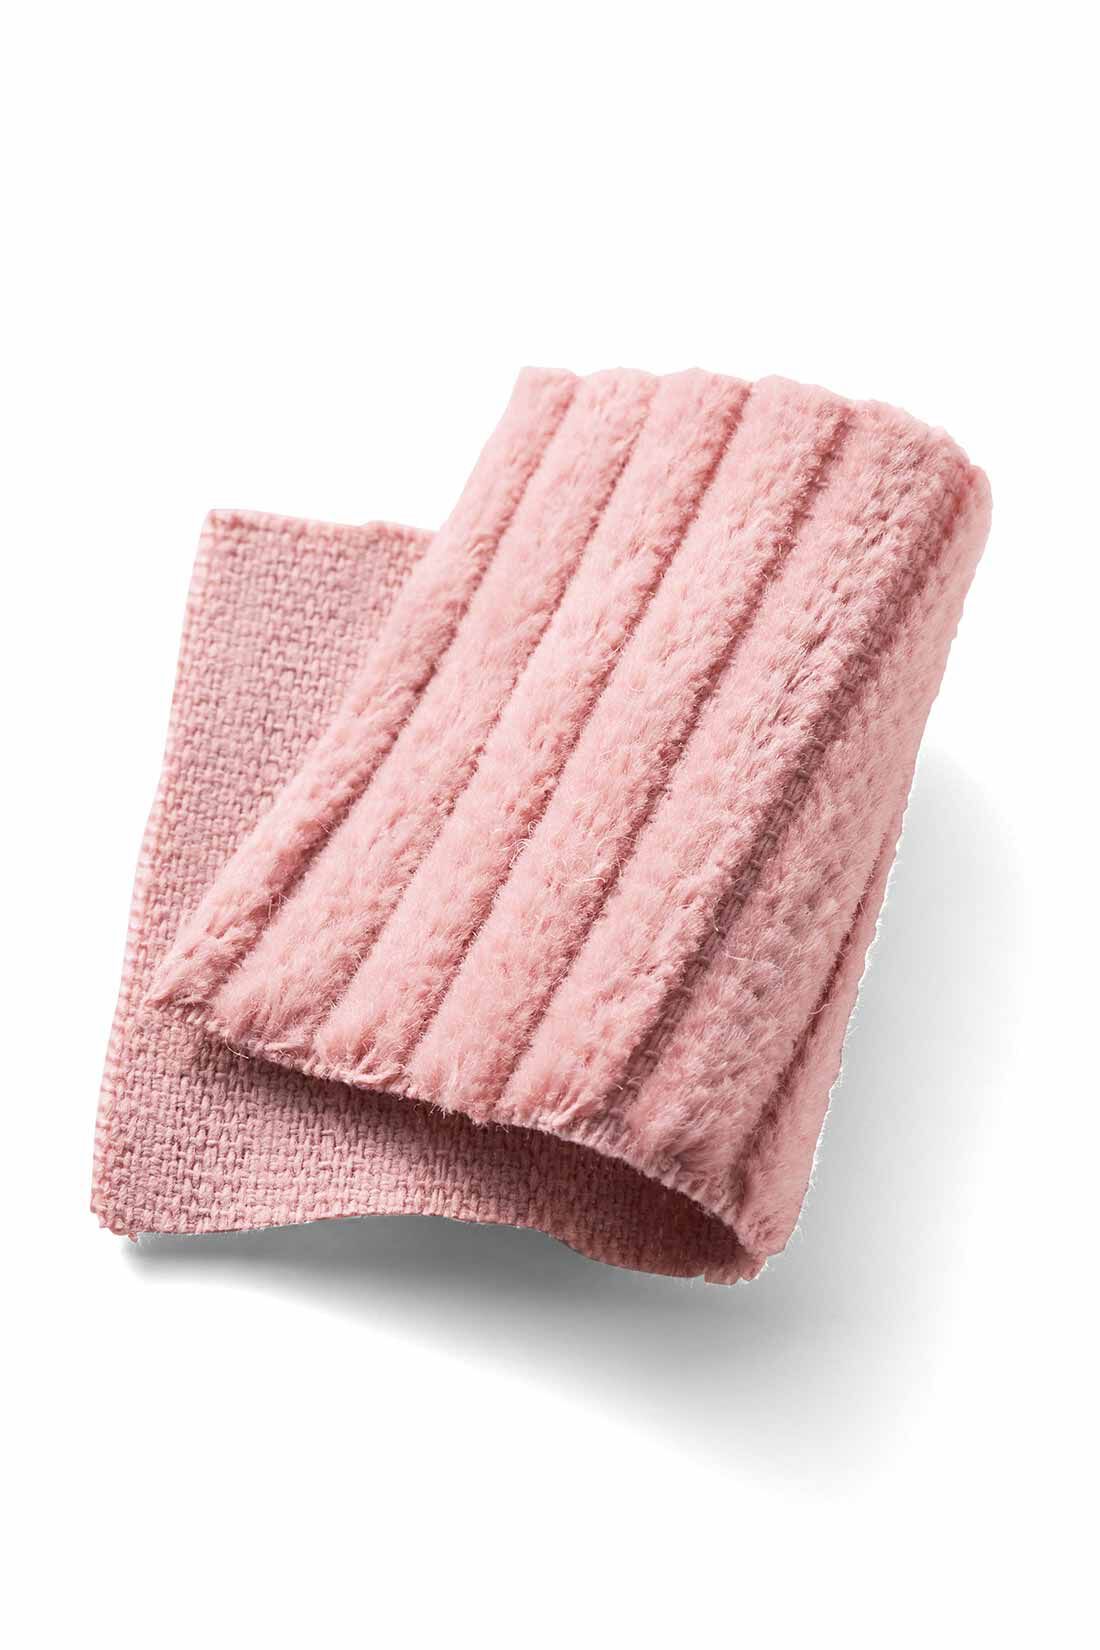 MEDE19F|MEDE19F　コーデュロイカラーパンツ〈ピンク〉|太うねのコーデュロイ素材。綿100％のくったりした風合いも懐かしいムード。